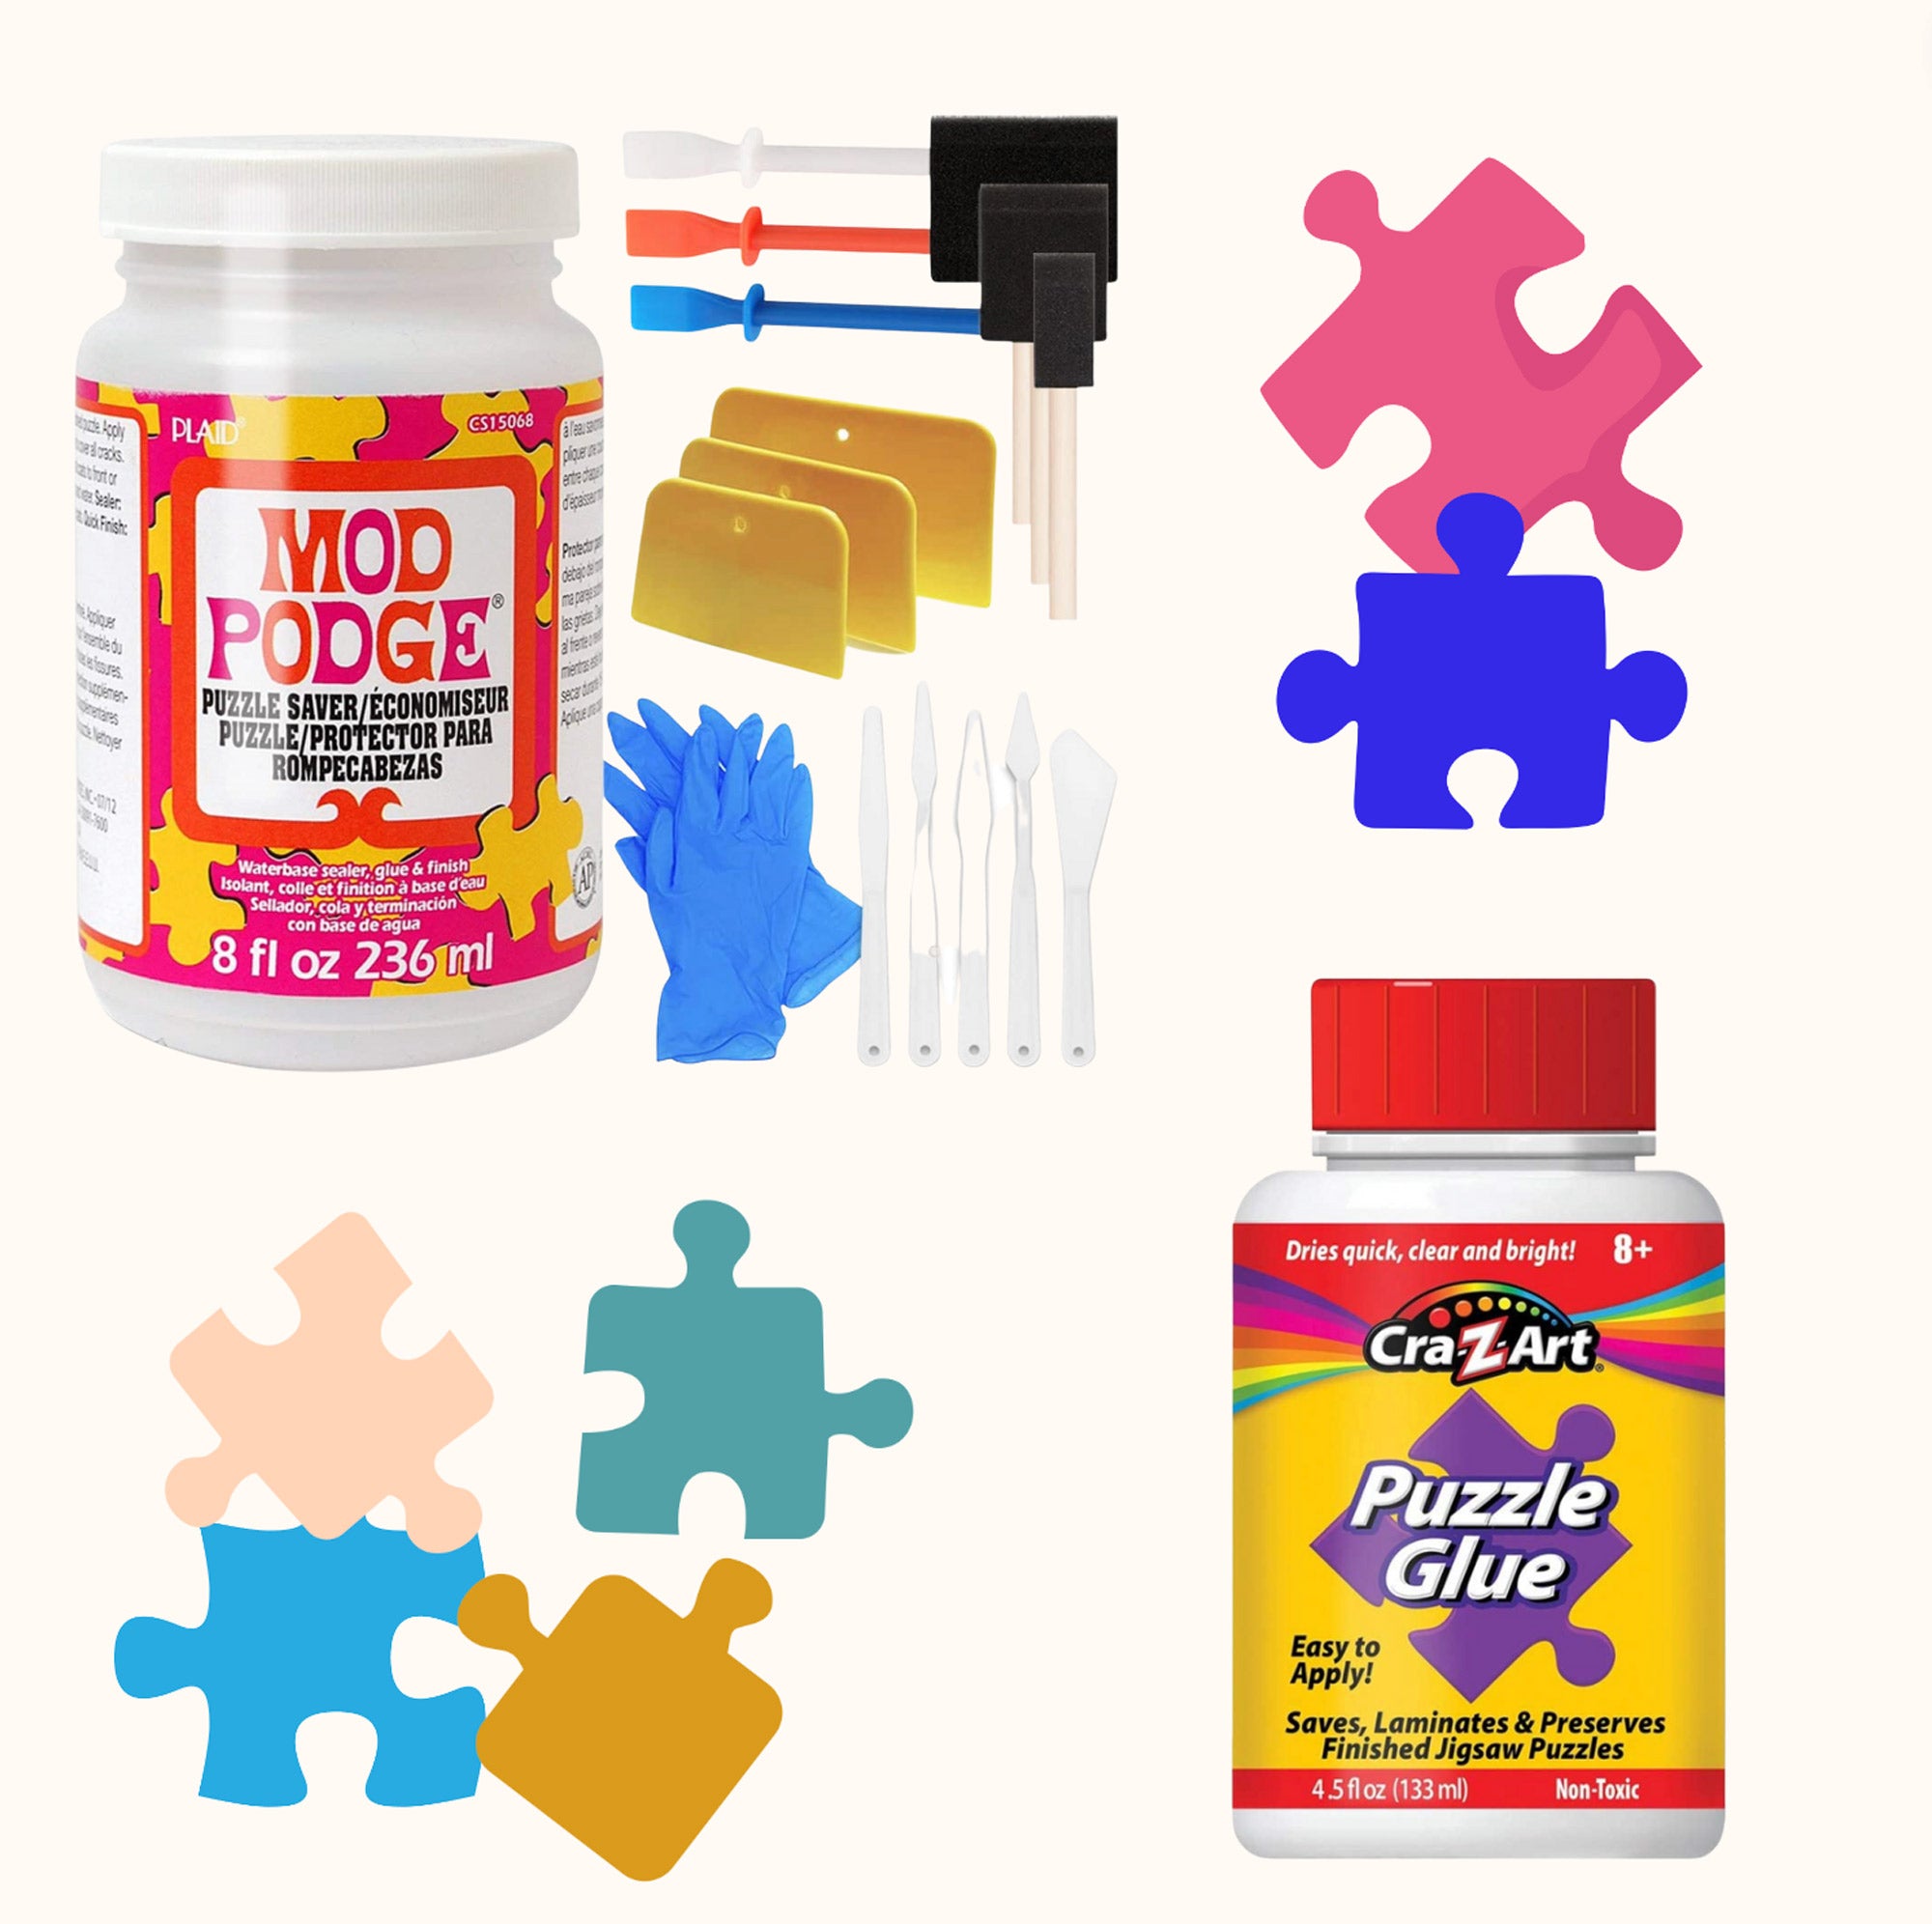 Jigsaw Puzzle Saver – ENJOY Puzzle